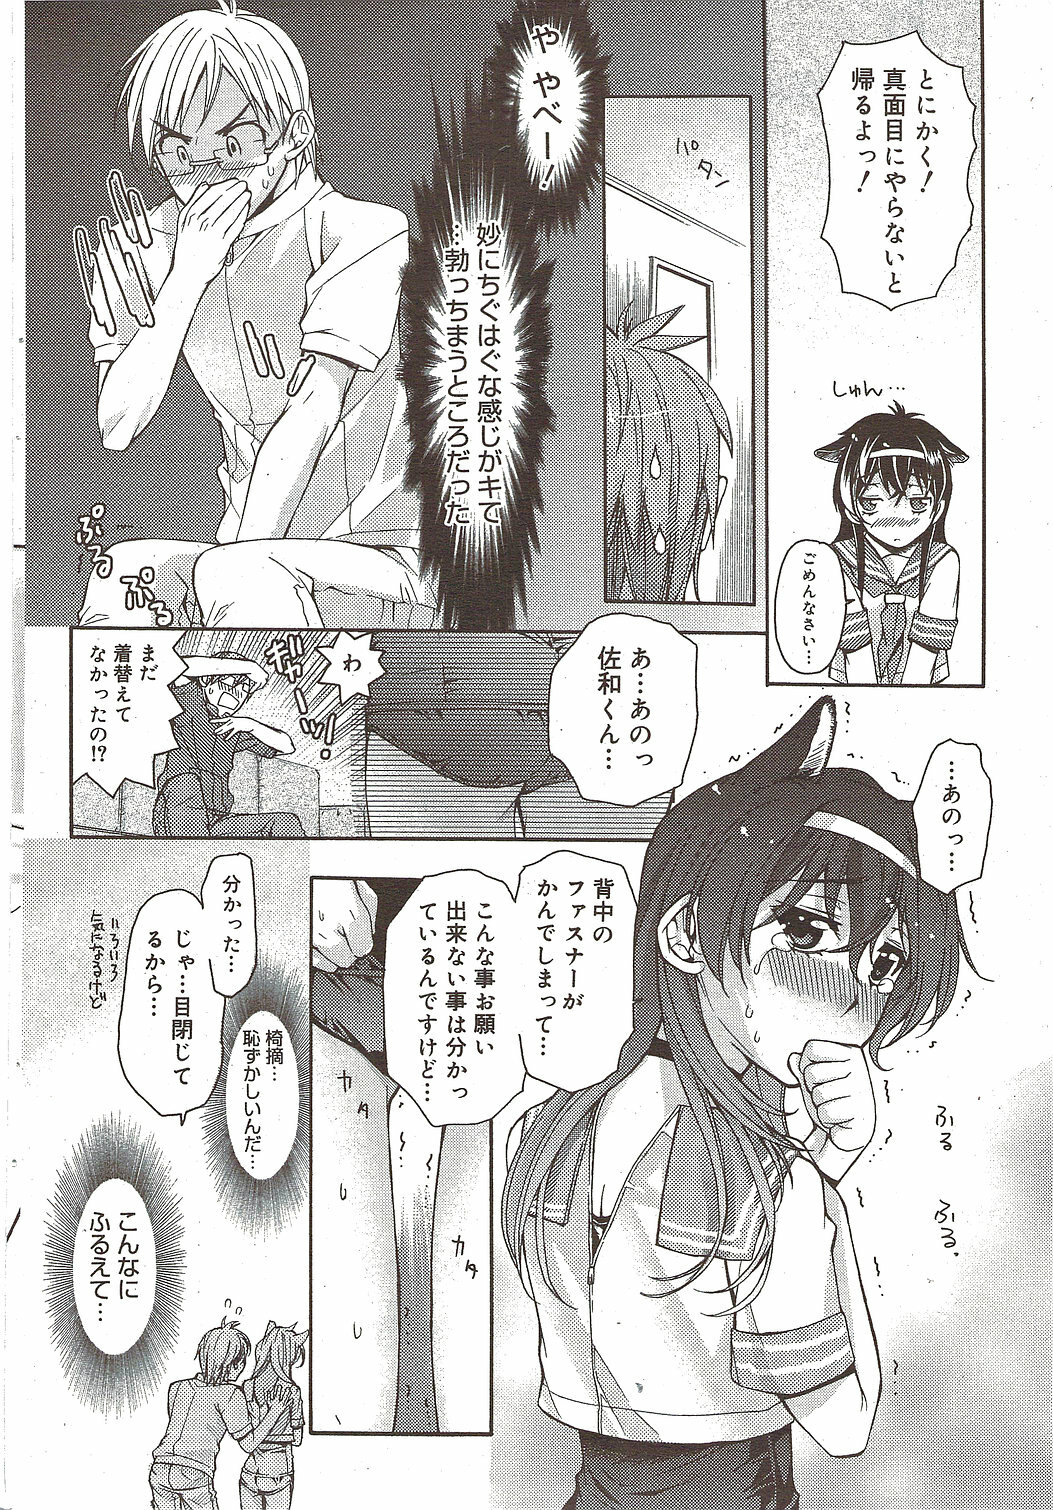 Manga Bangaichi 2009-12 page 50 full